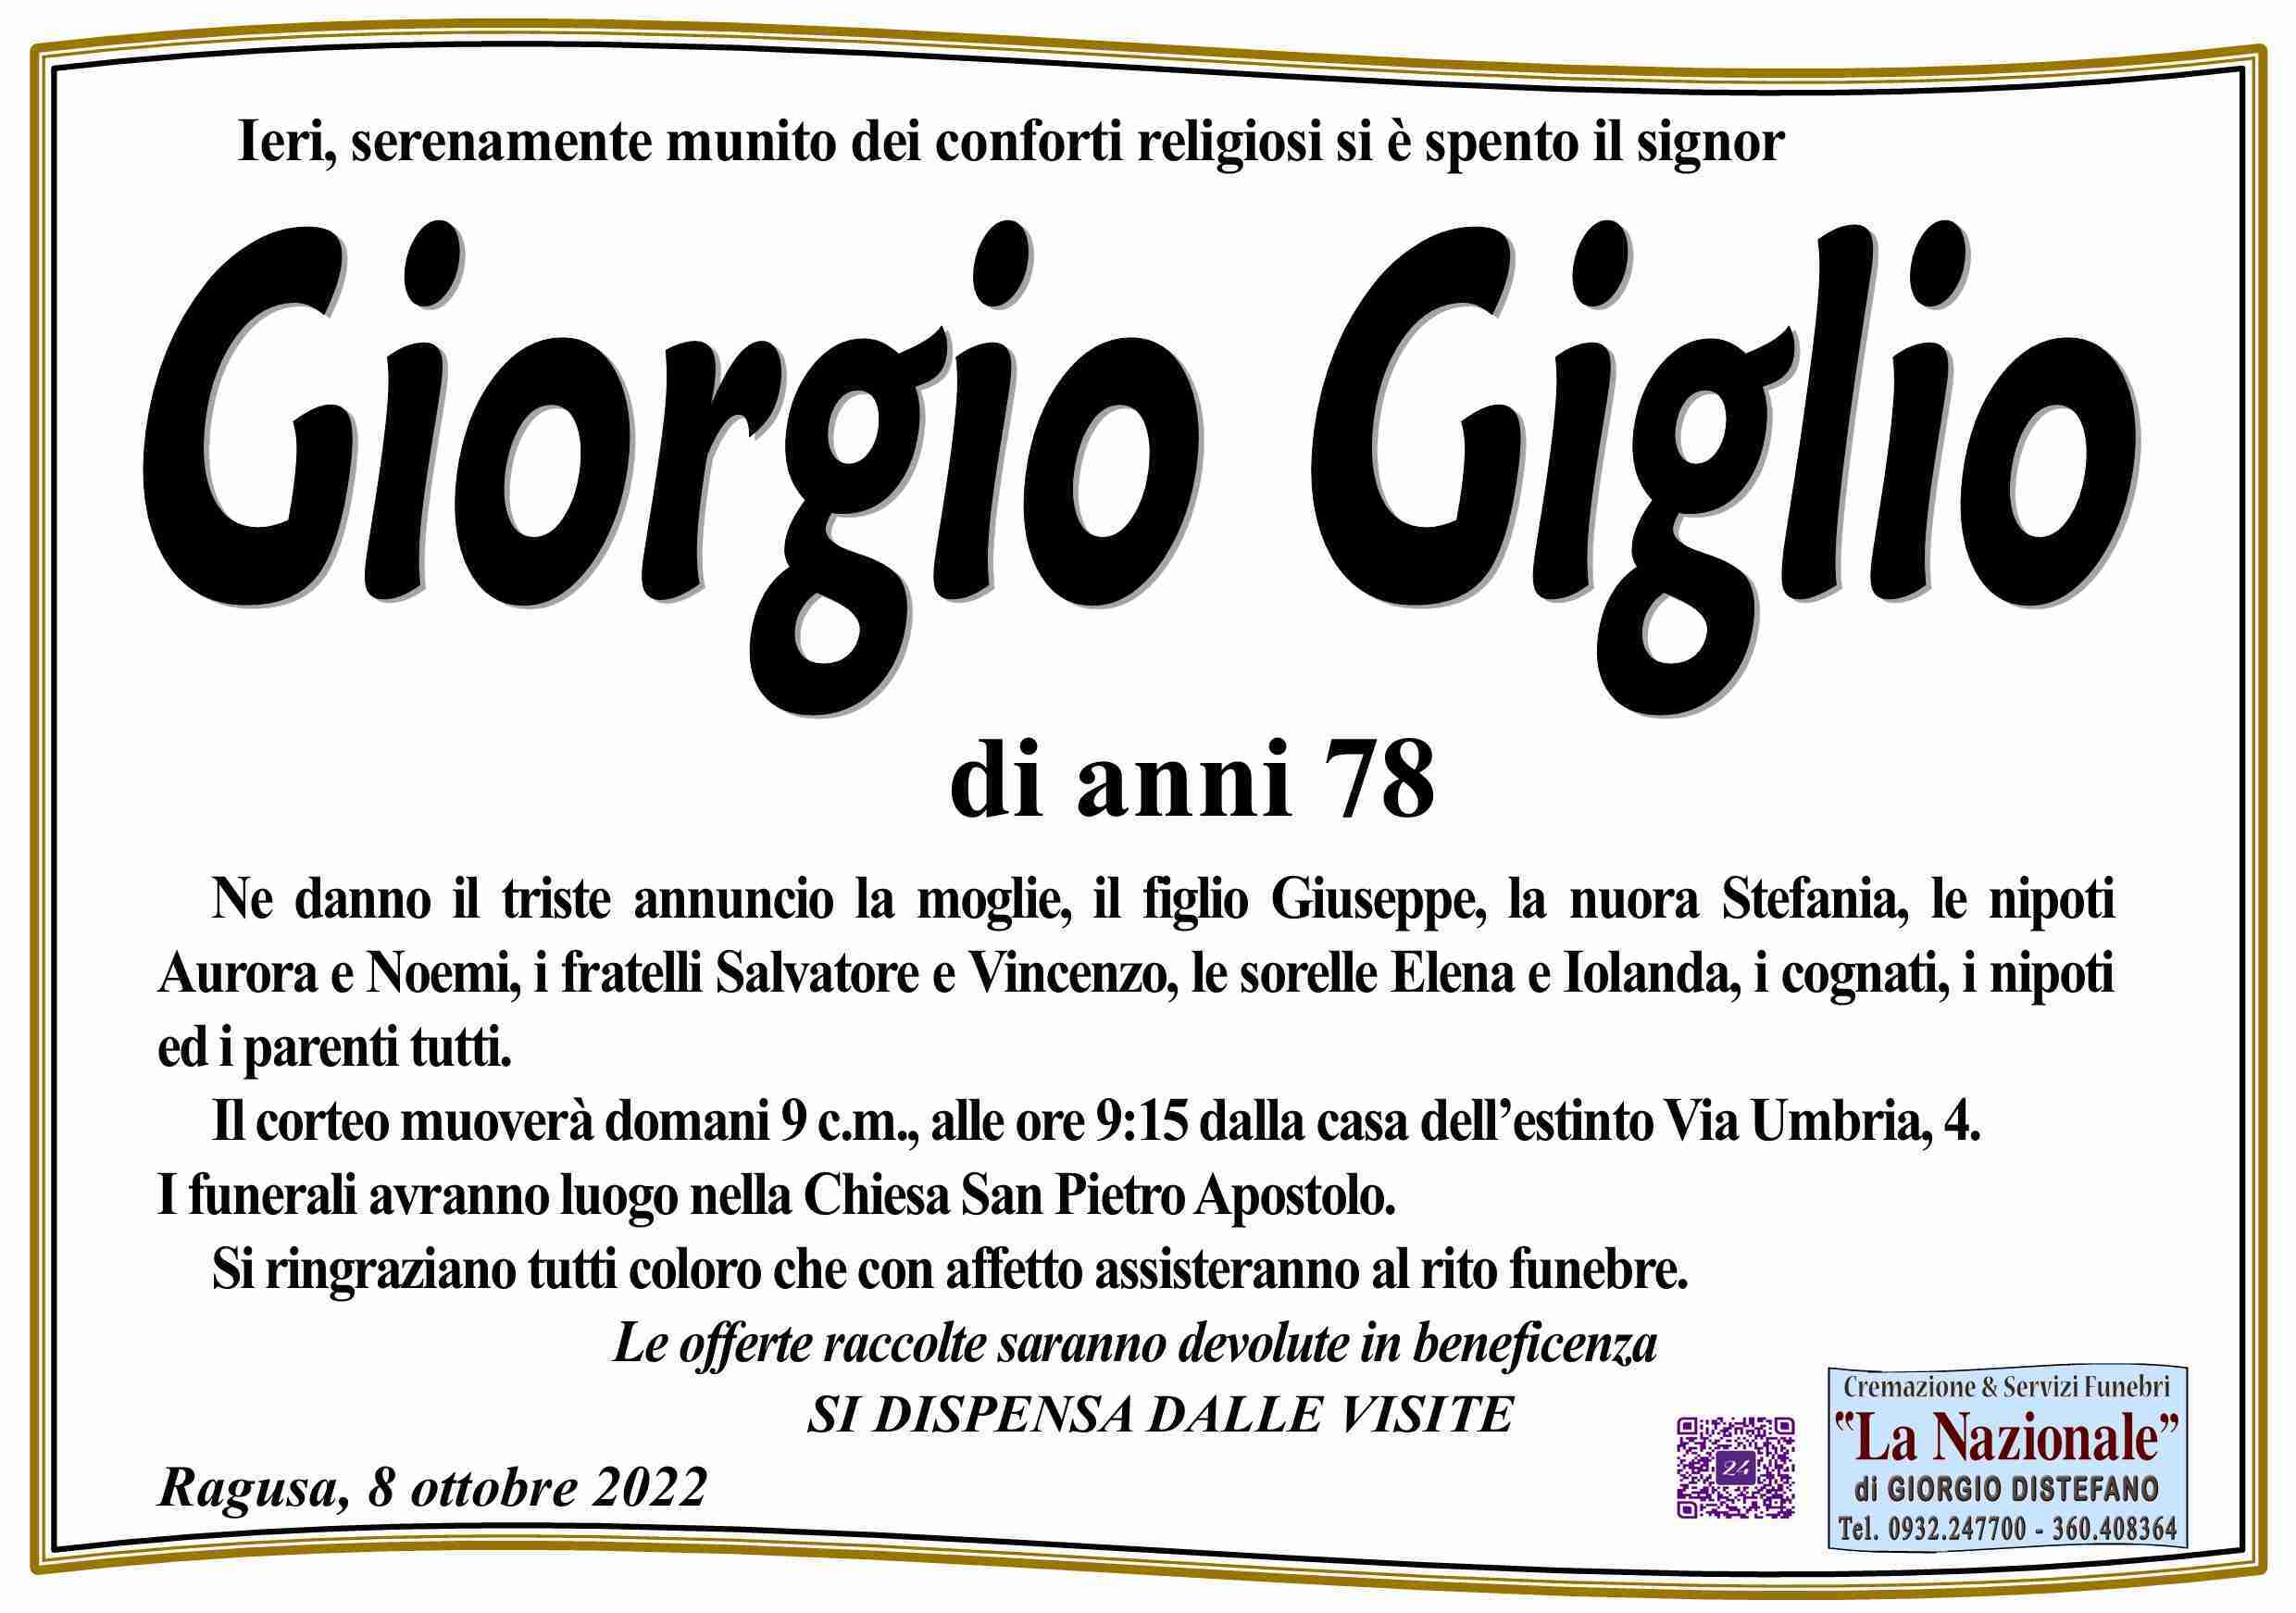 Giorgio Giglio